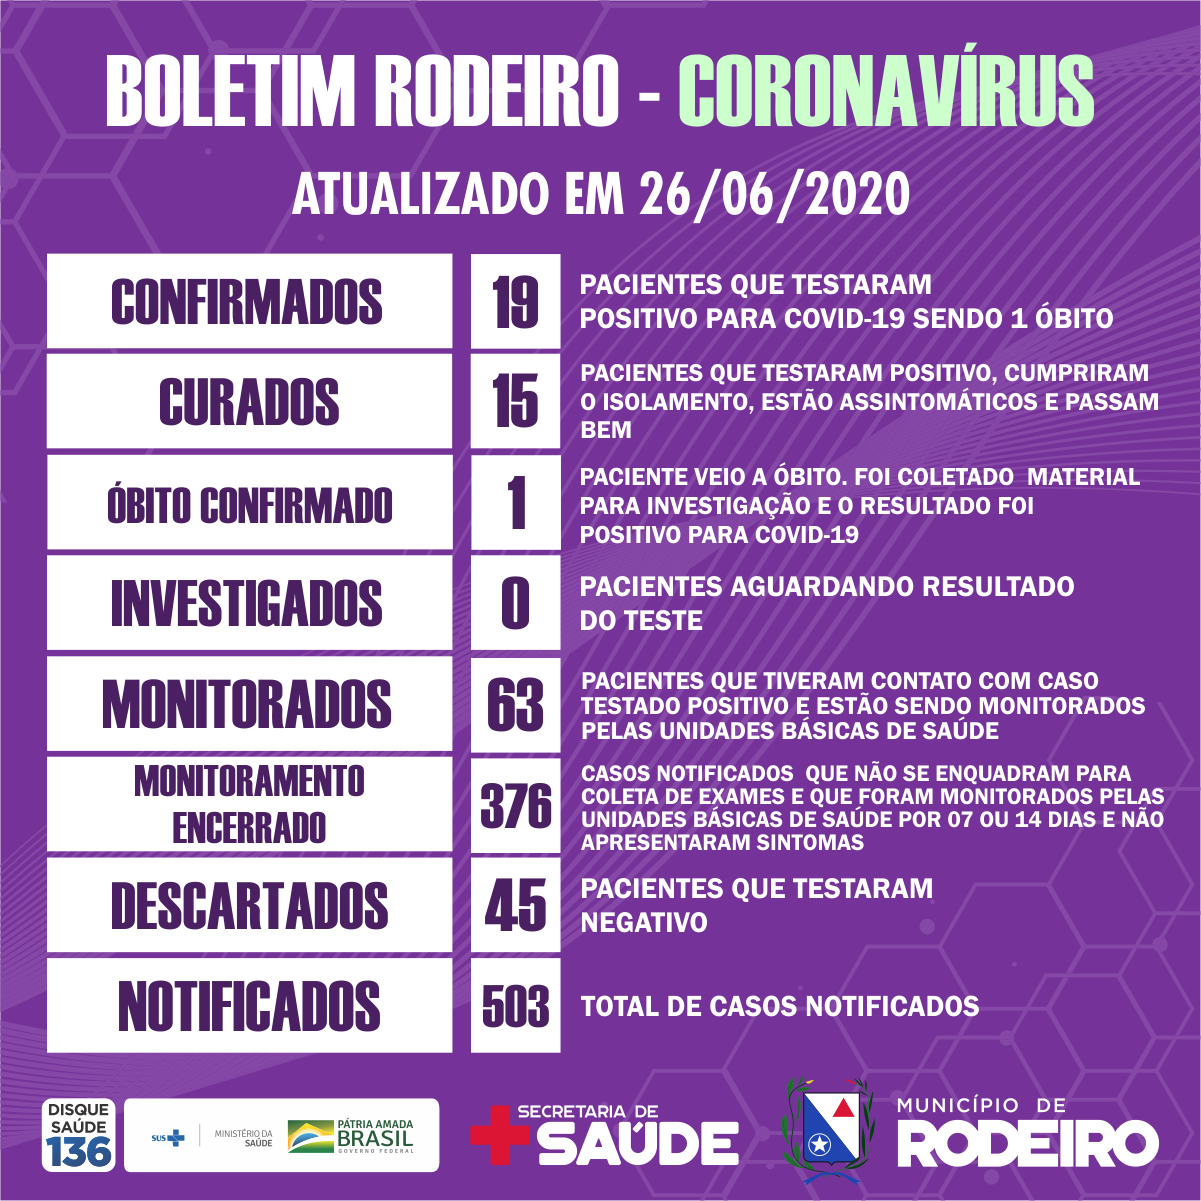 Boletim epidemiológico do Município de Rodeiro coronavírus, atualizado em 26/06/2020